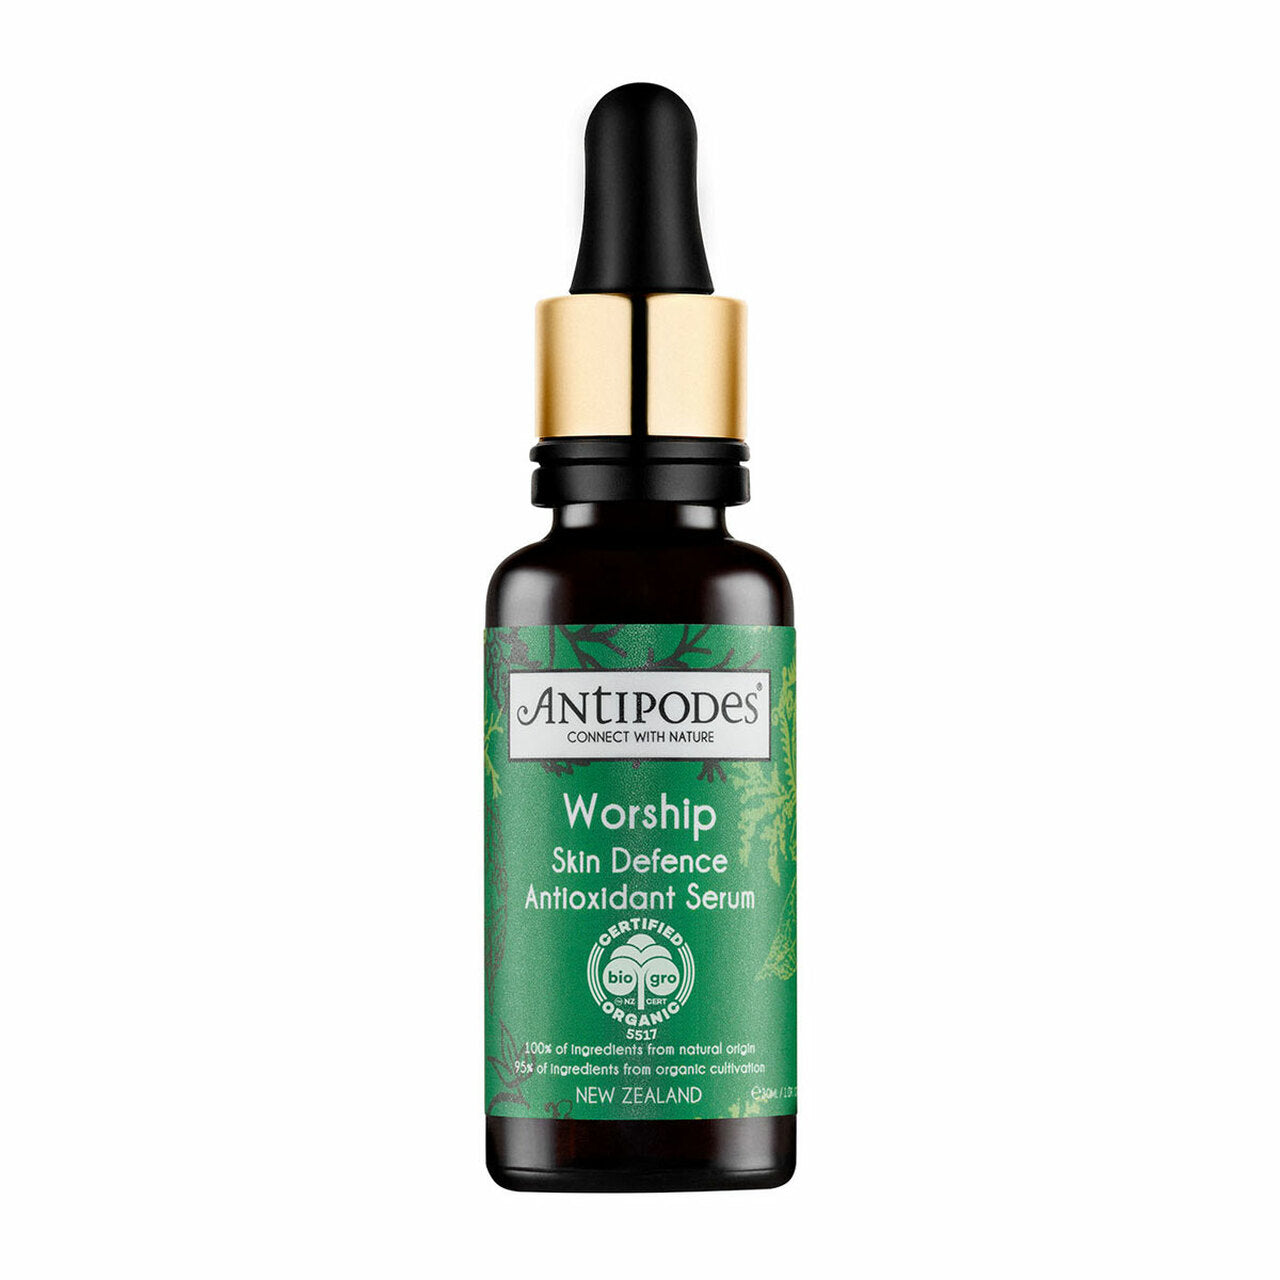 Antipodes Worship Skin Defence Antioxidant Serum 30ml.